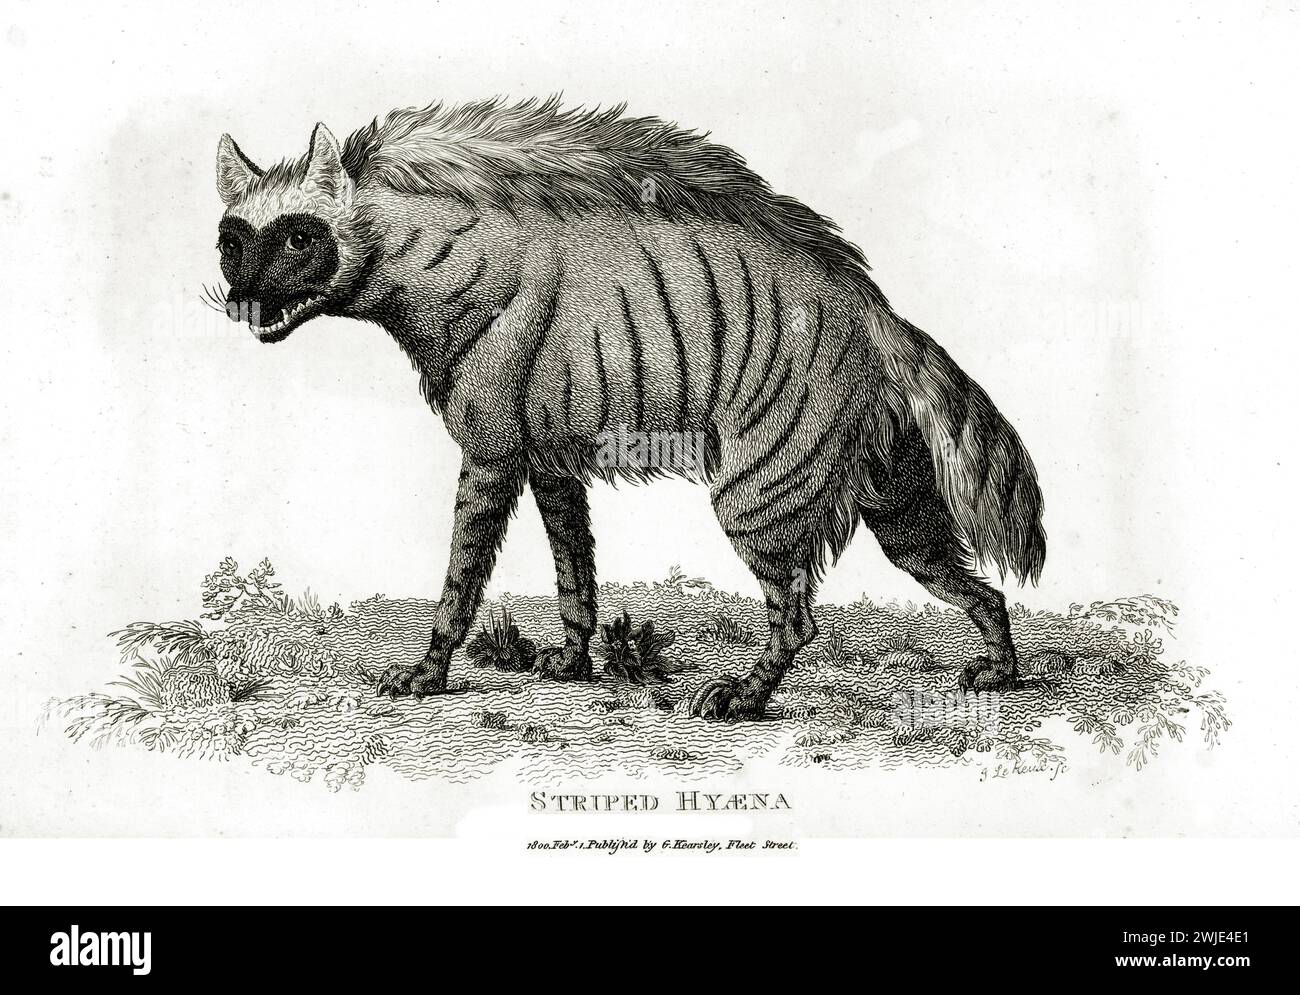 Alte gravierte Illustration der gestreiften Hyena. Erstellt von George Shaw, veröffentlicht in Zoological Lectures, London, 1809 Stockfoto